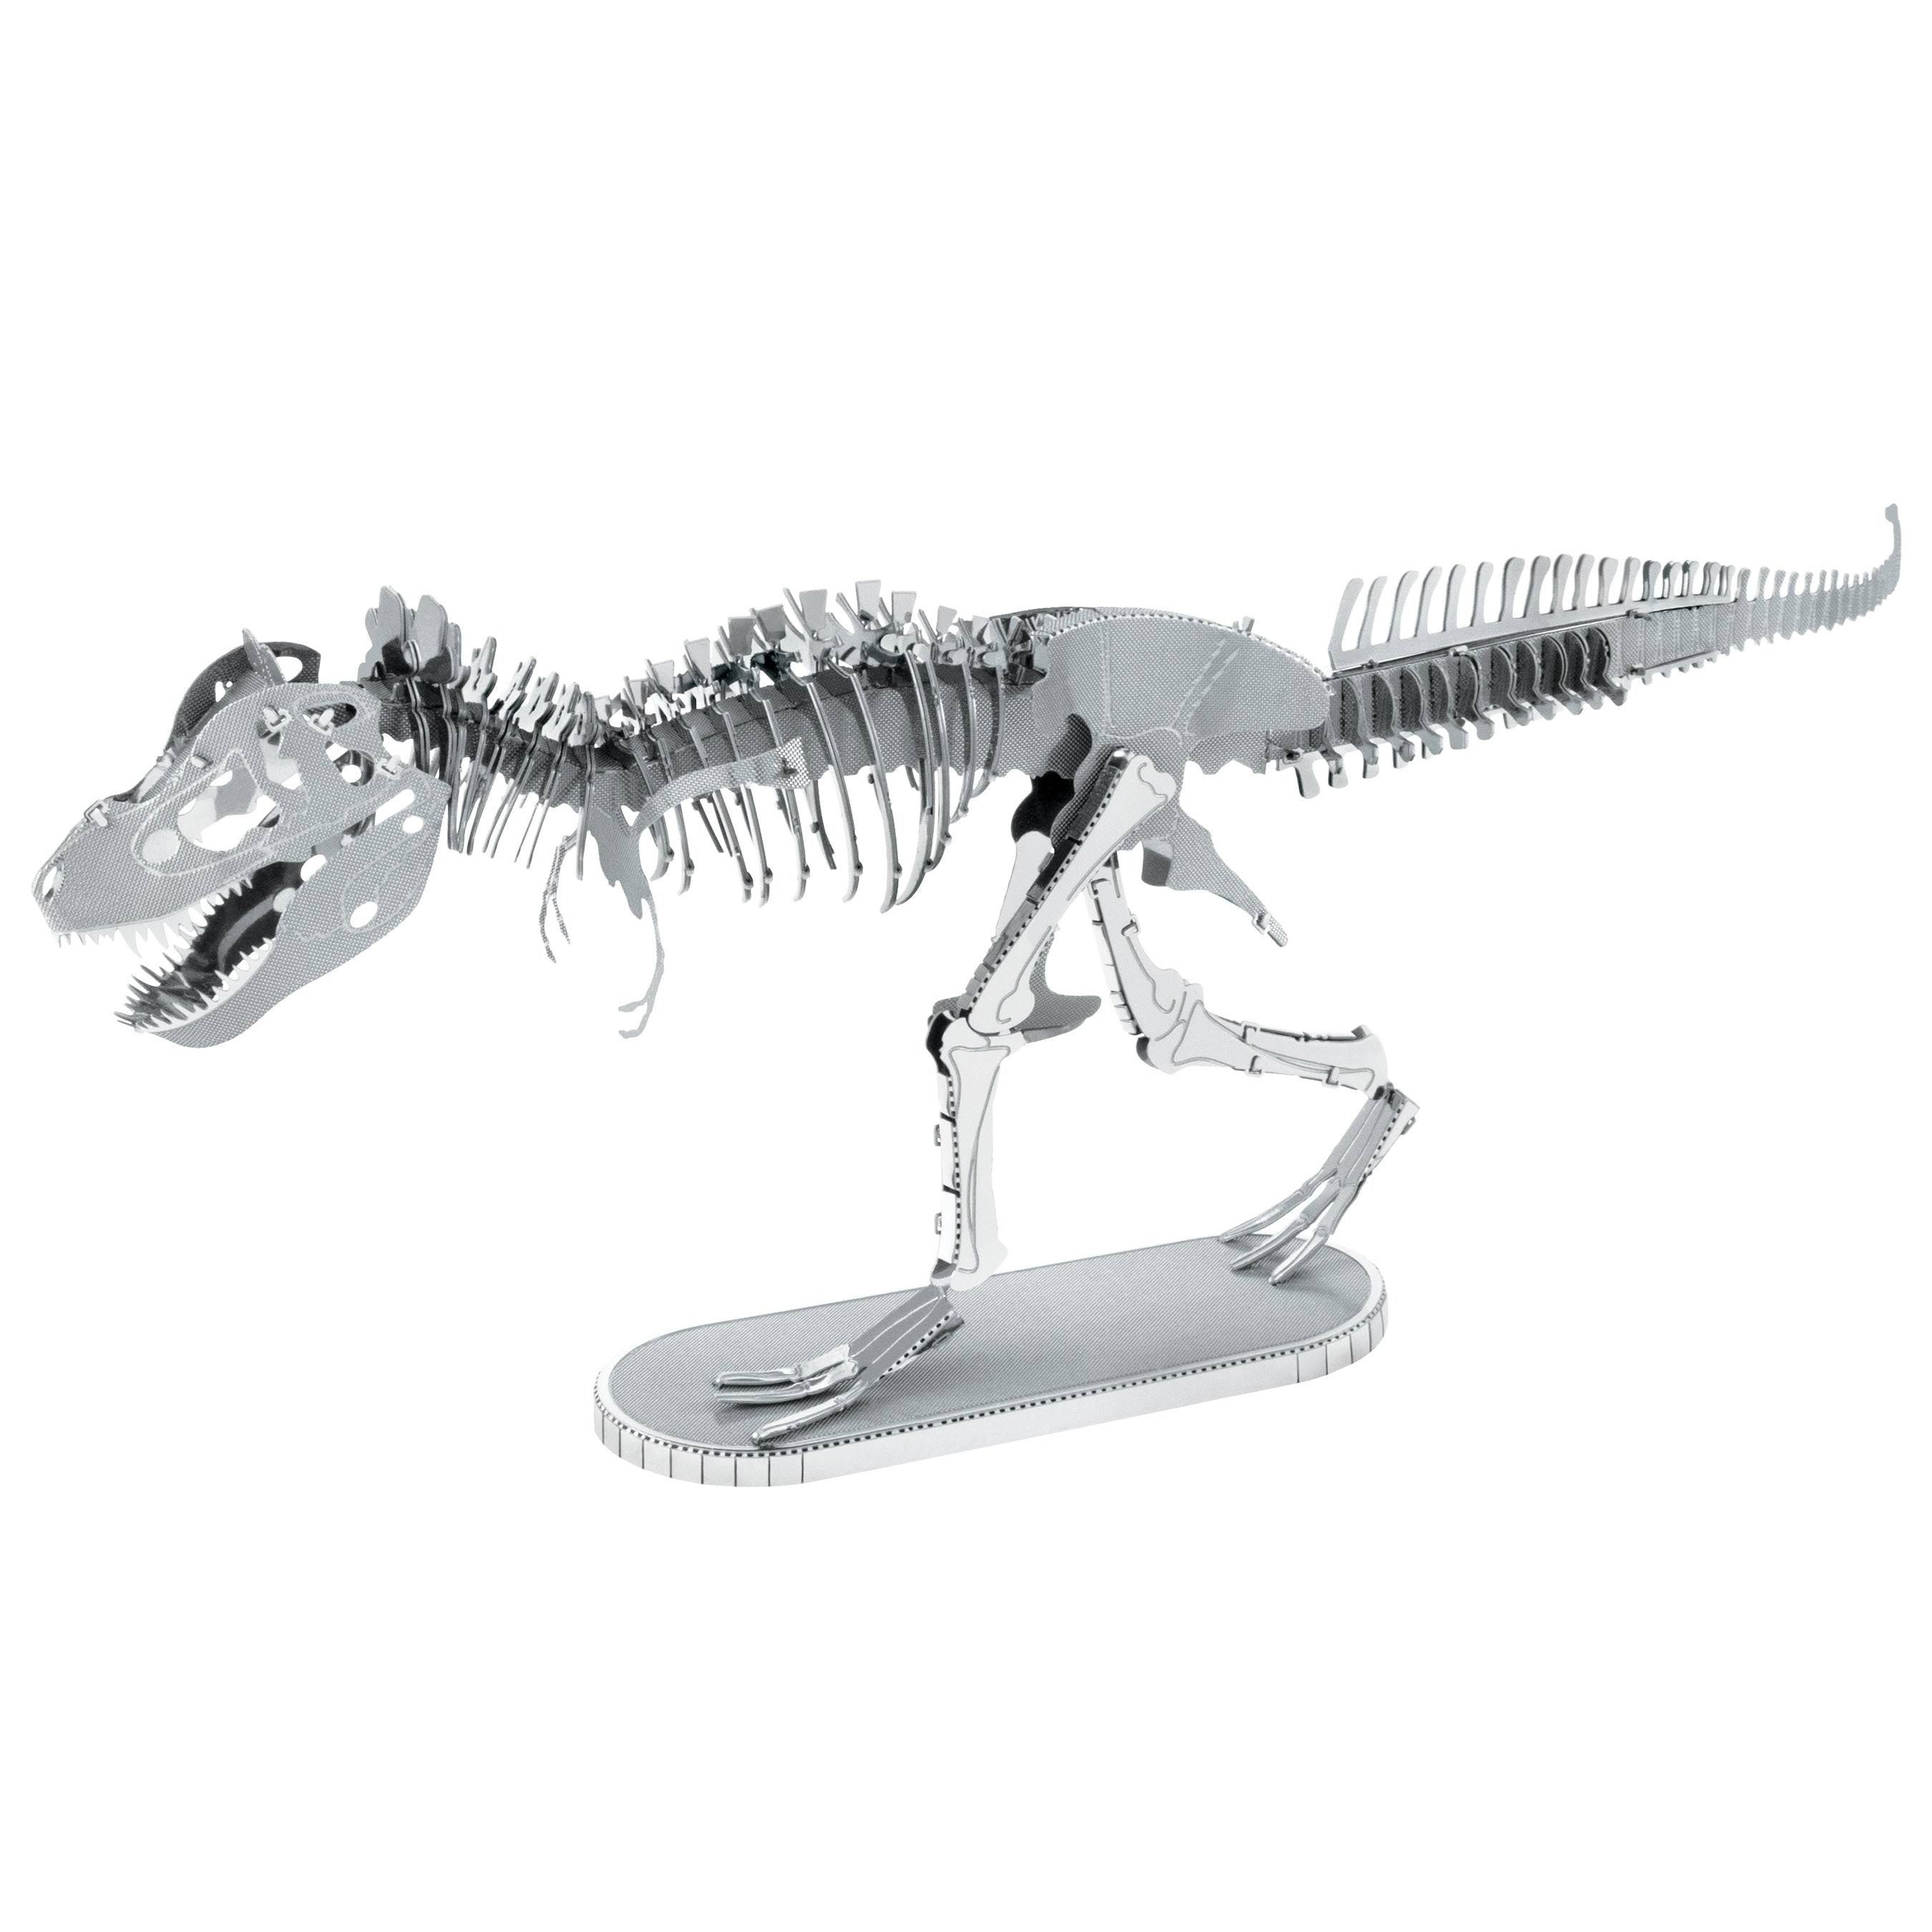 Fascinations Metal Earth 3D Metal Model Kit - Tyrannosaurus Rex